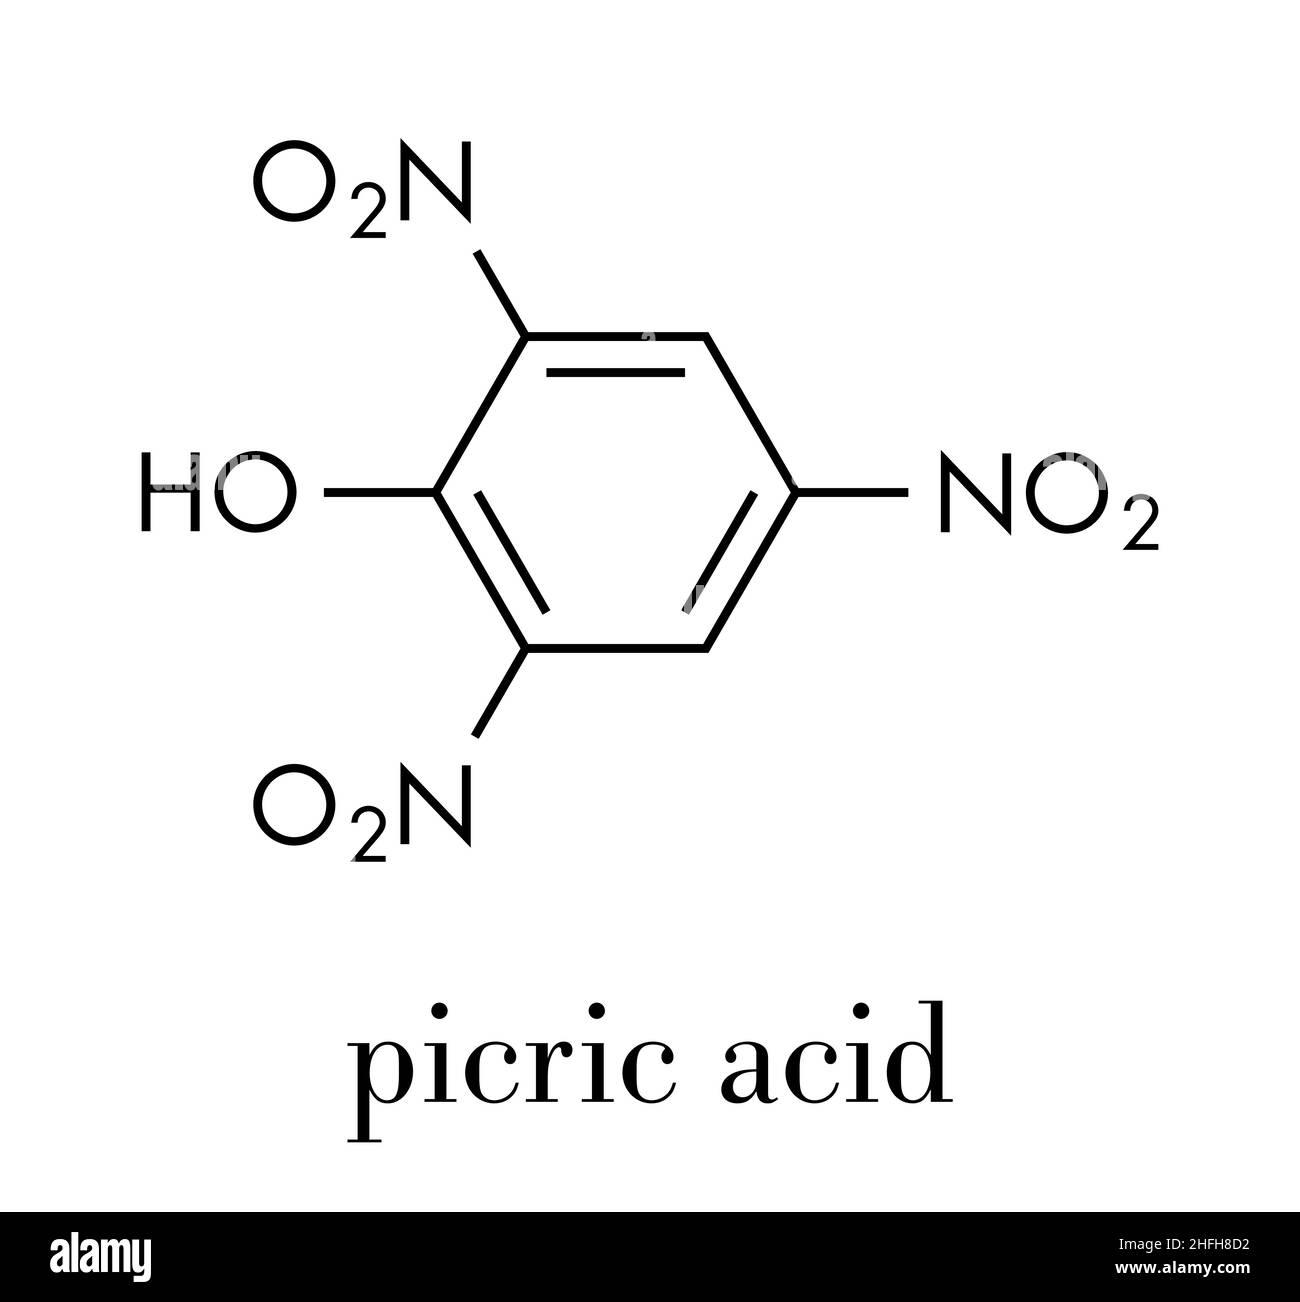 Picric acid (2,4,6-trinitrophenol) explosive molecule. Skeletal formula.Picric acid (2,4,6-trinitrophenol) explosive molecule. Skeletal formula. Stock Vector